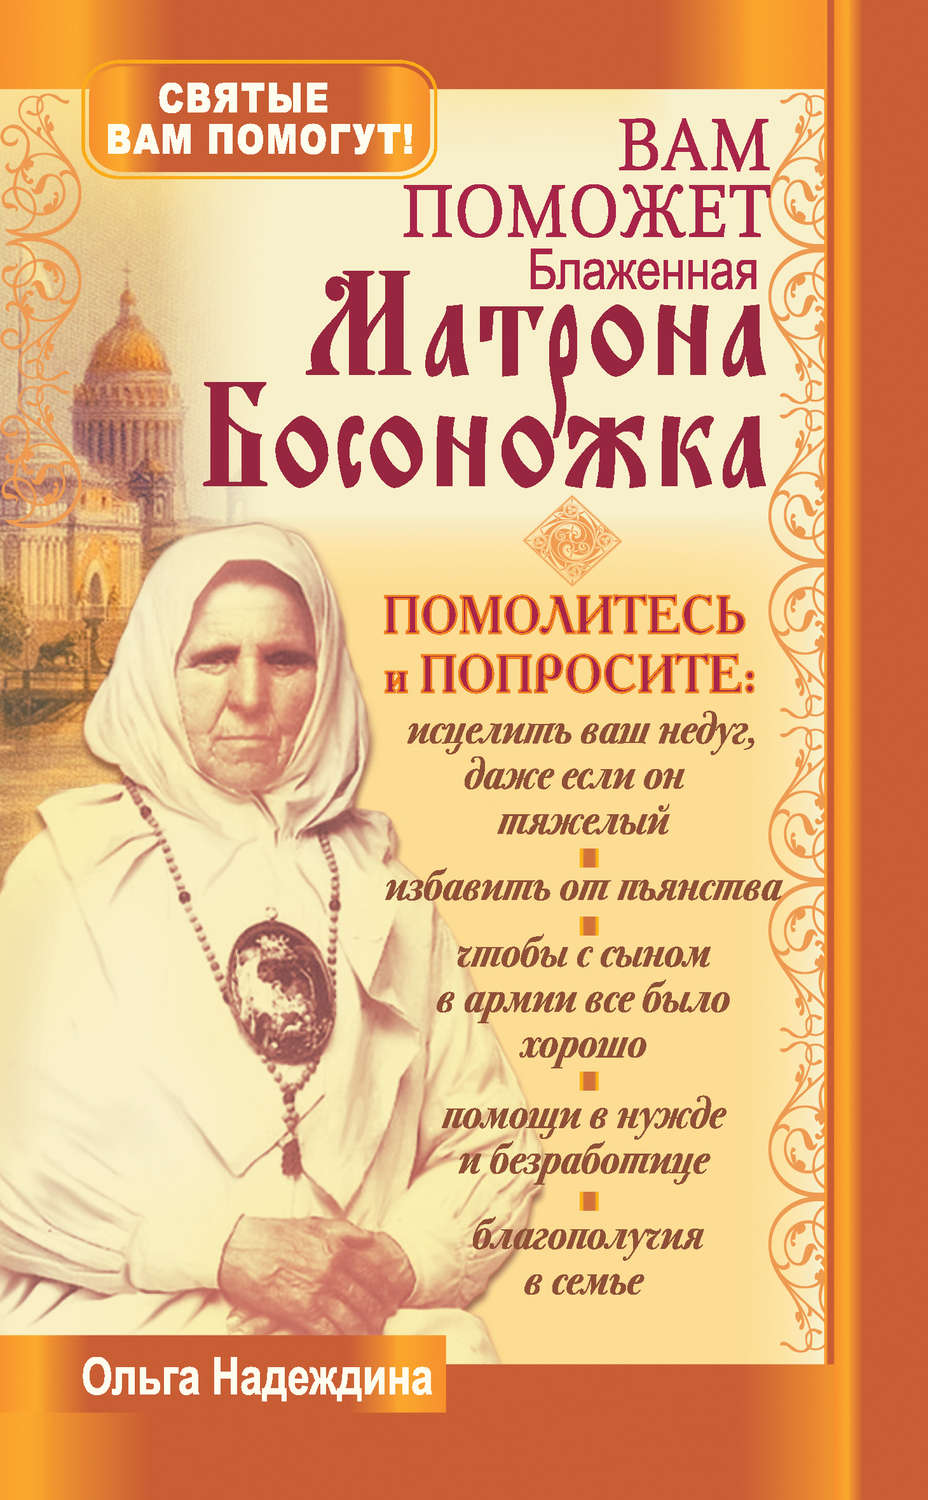 Блаженная Матрона босоножка Петербургская молитва